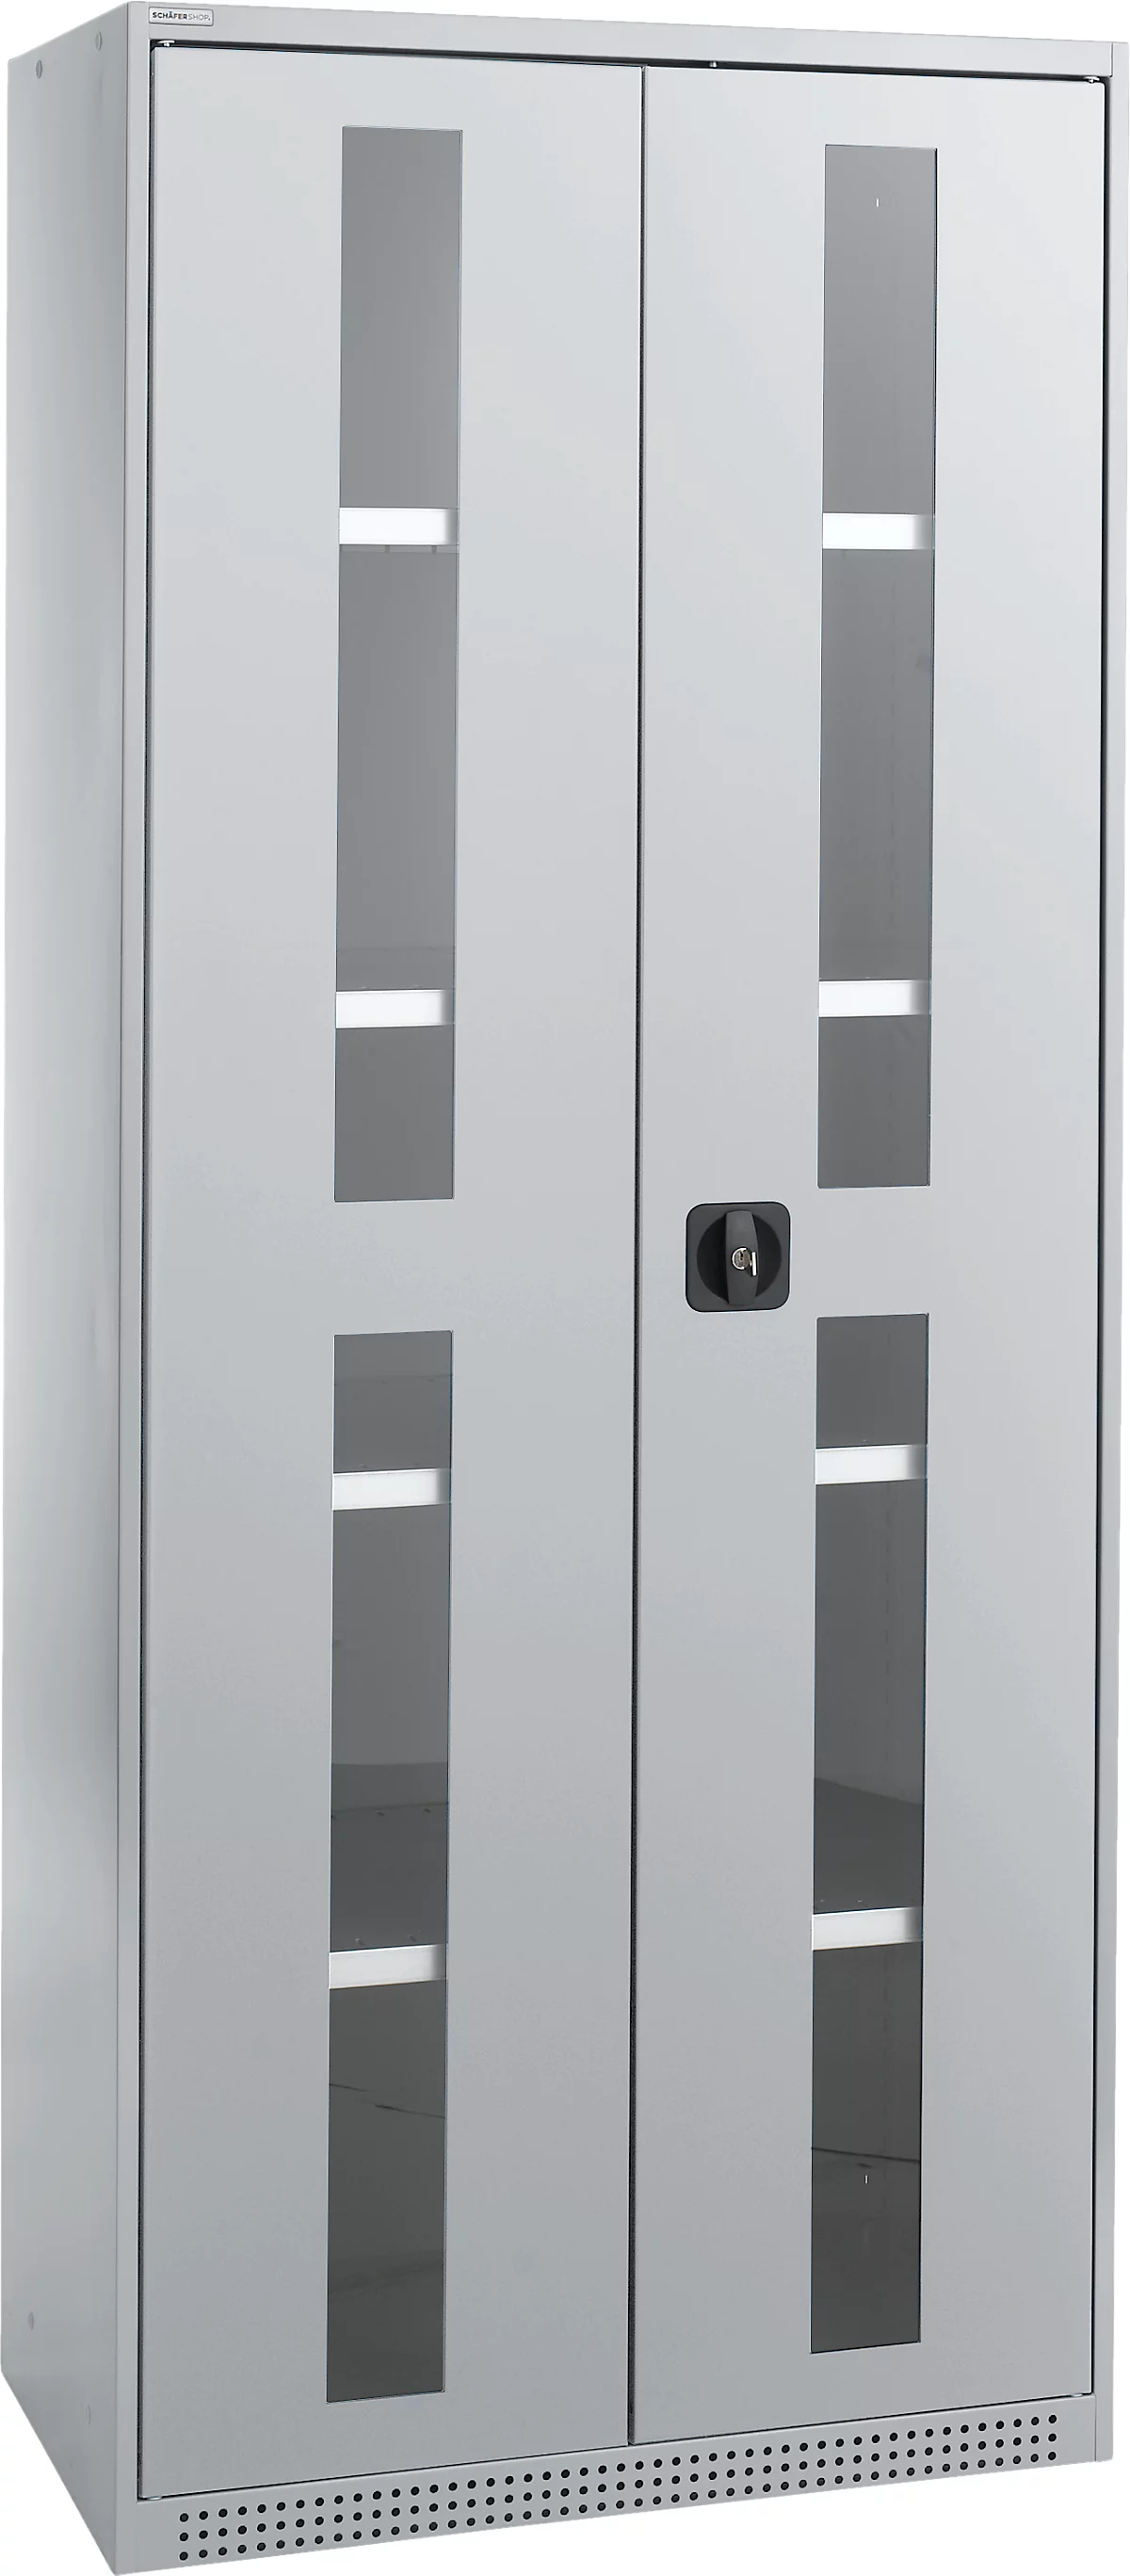 Schäfer Shop Genius armario con puerta giratoria FS, acero, mirilla, agujeros de ventilación, An 810 x Pr 520 x Al 1950 mm, 5 OH, aluminio blanco/aluminio blanco, hasta 300 kg 